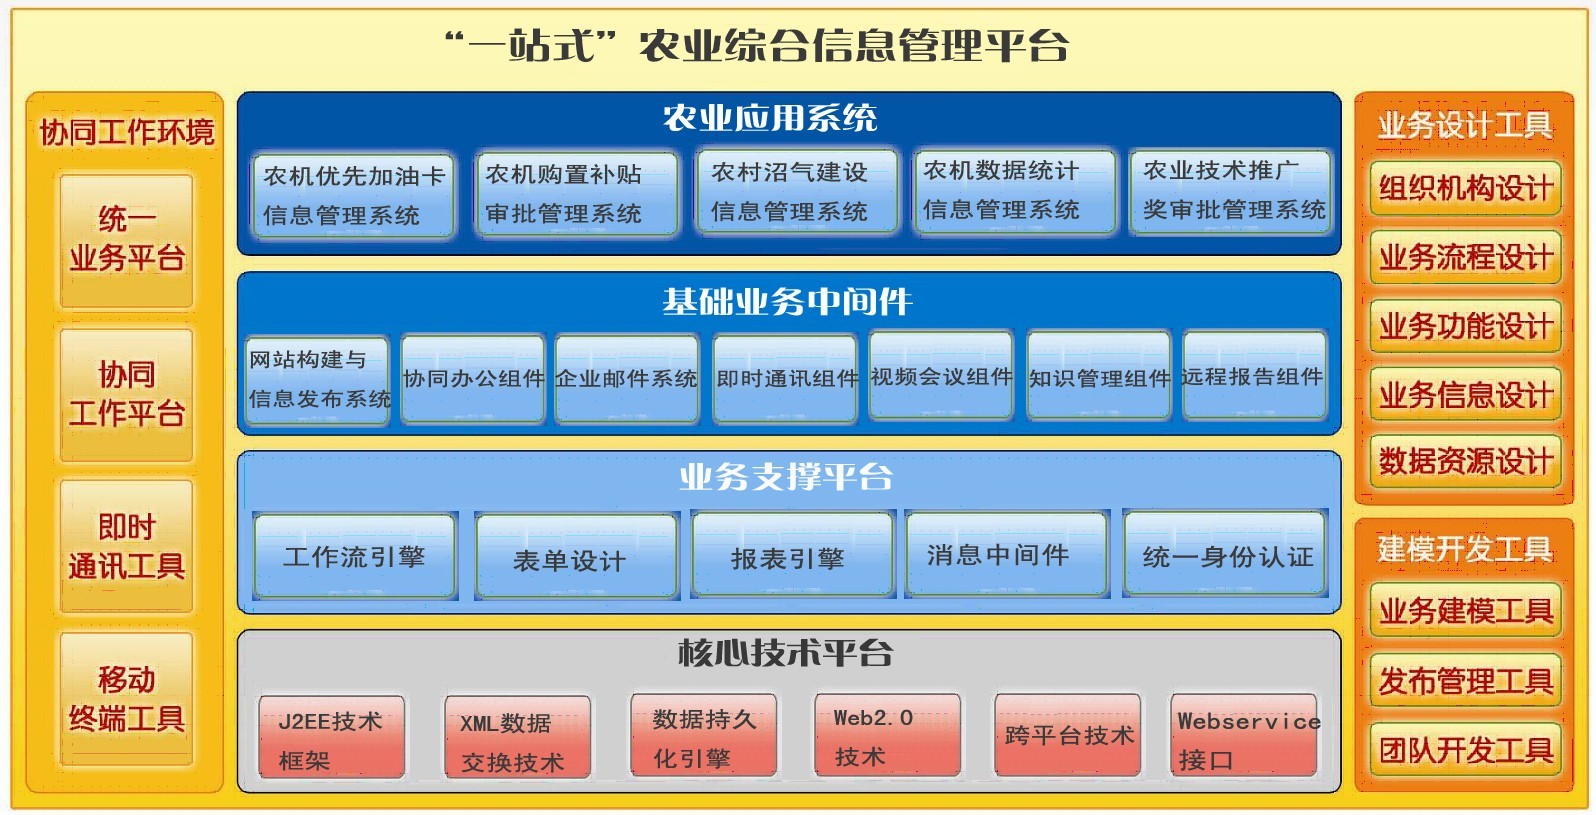 农业OA,智慧农政管理系统（四川,重庆,贵州,云南、西藏） 